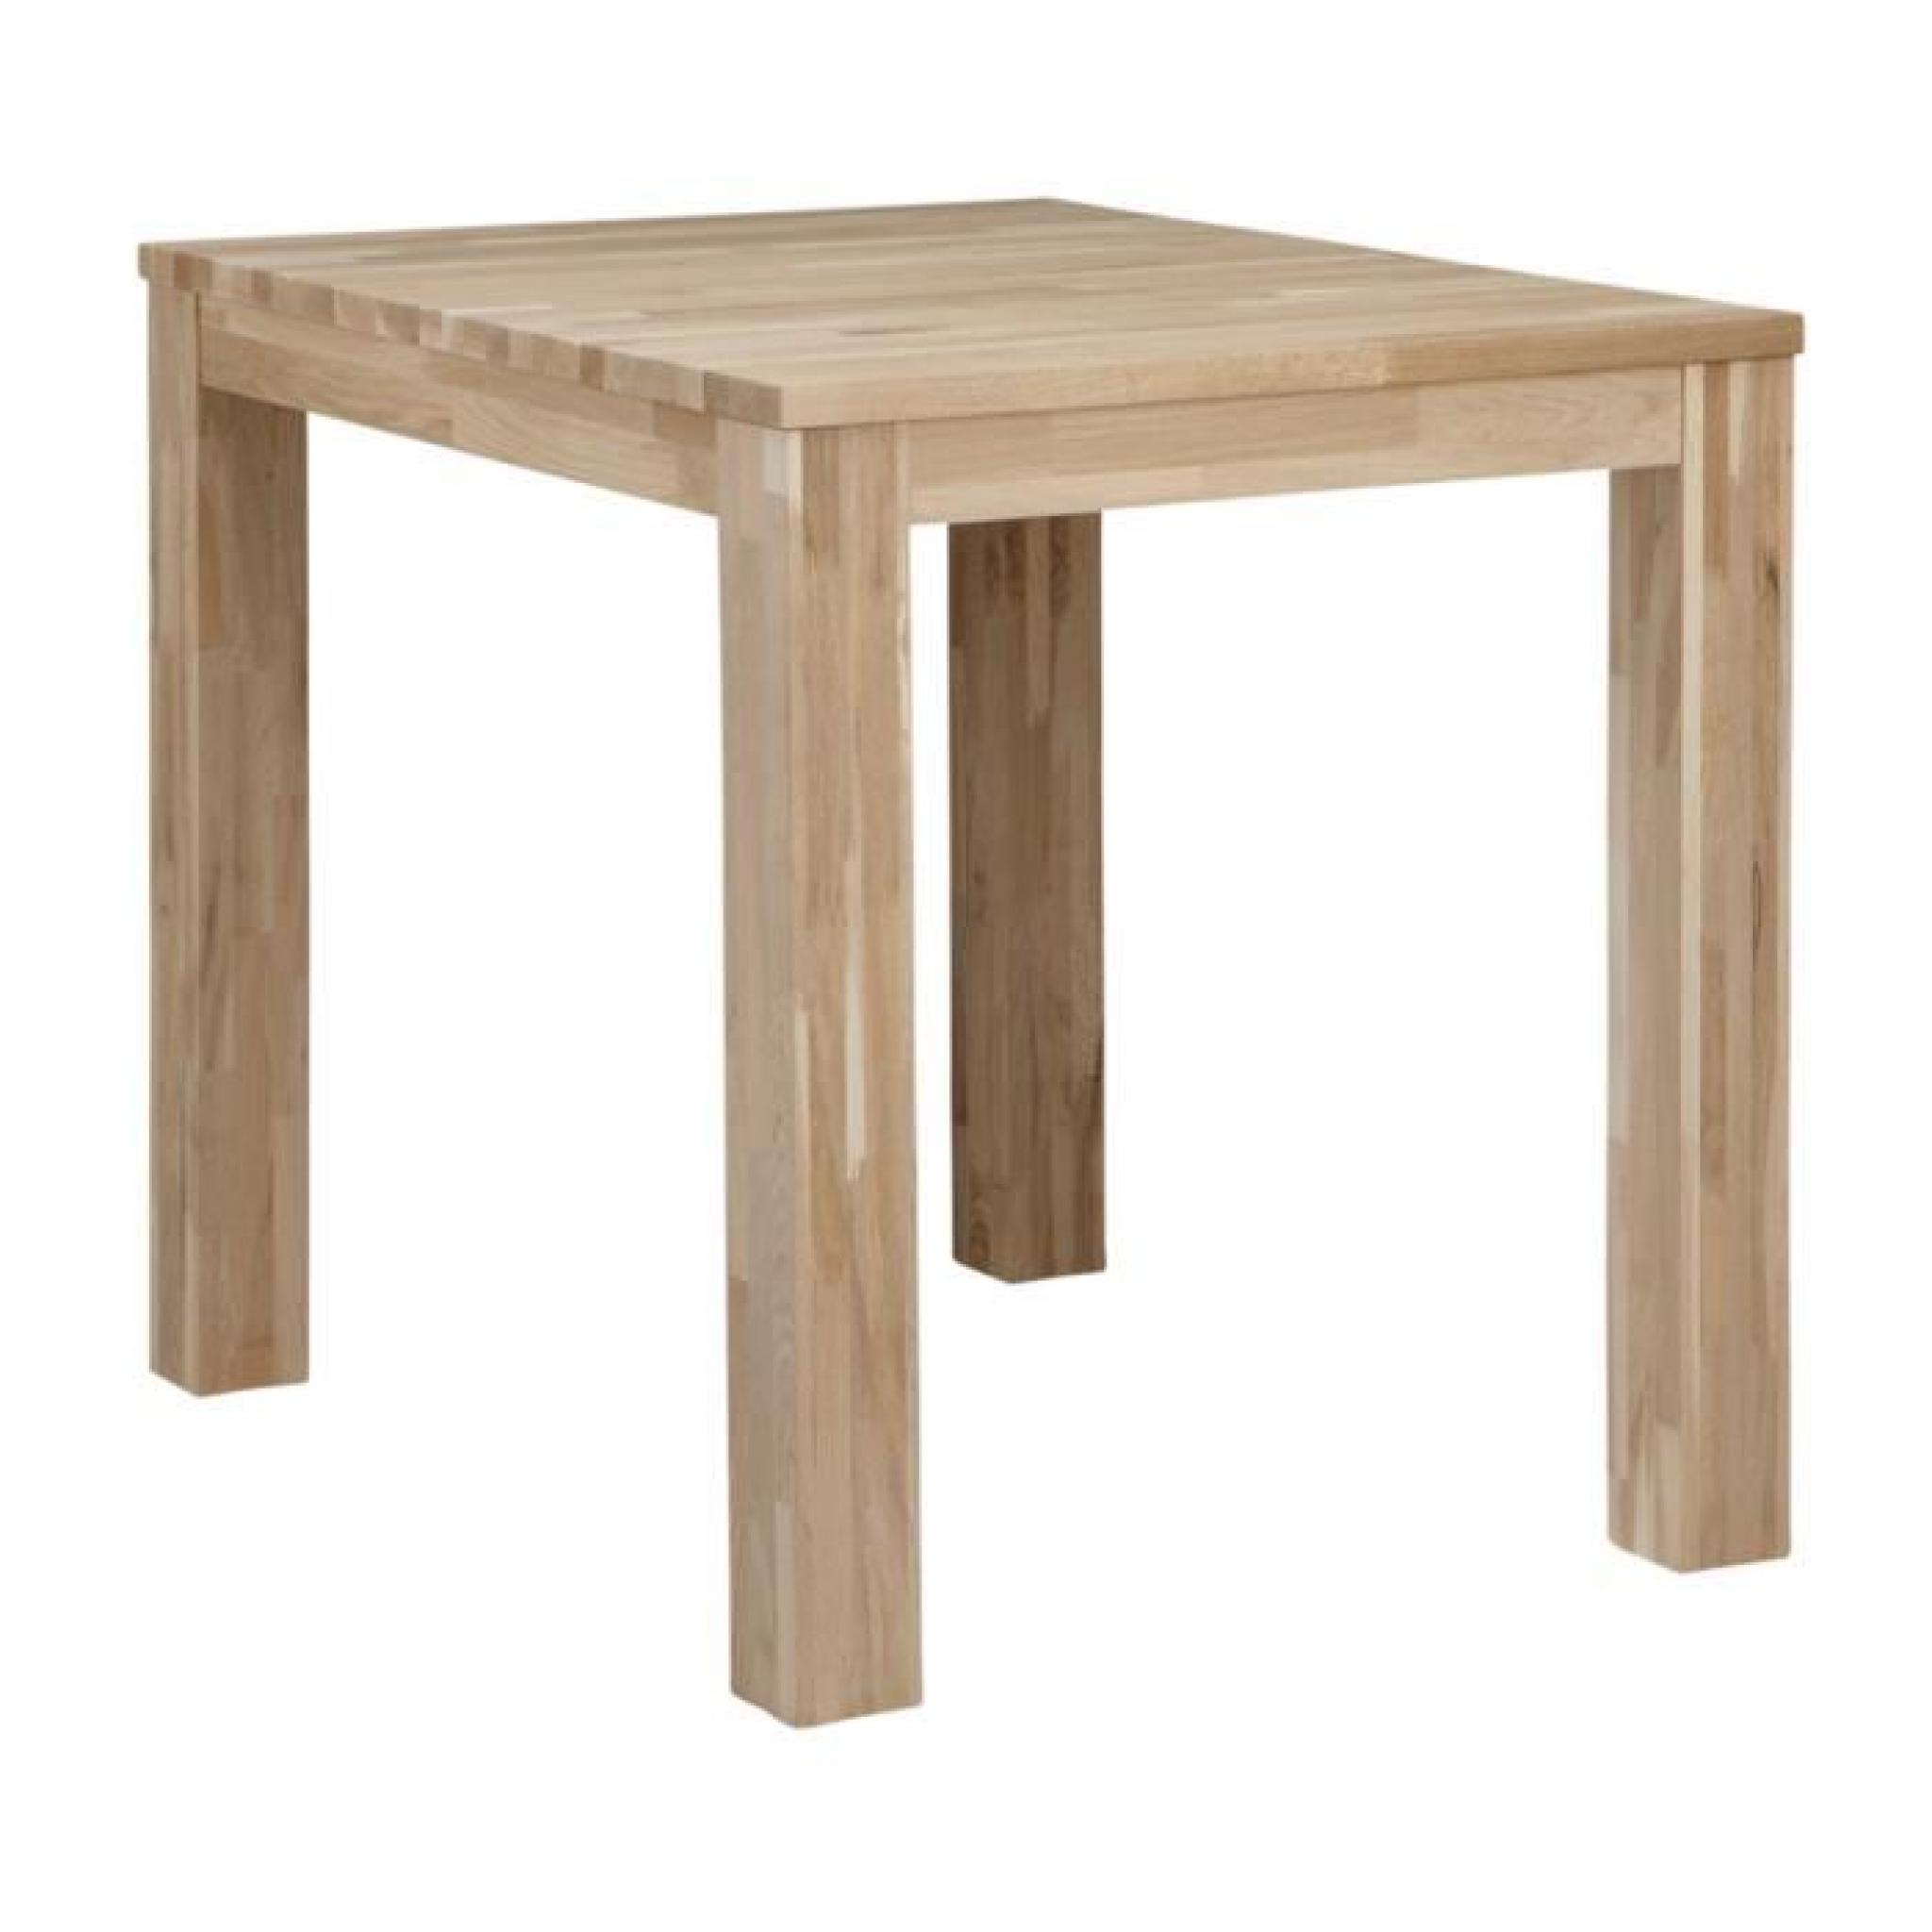 Table à manger chêne massif pieds 8 x 8 cm, H 78 x L 130 x P 130 cm